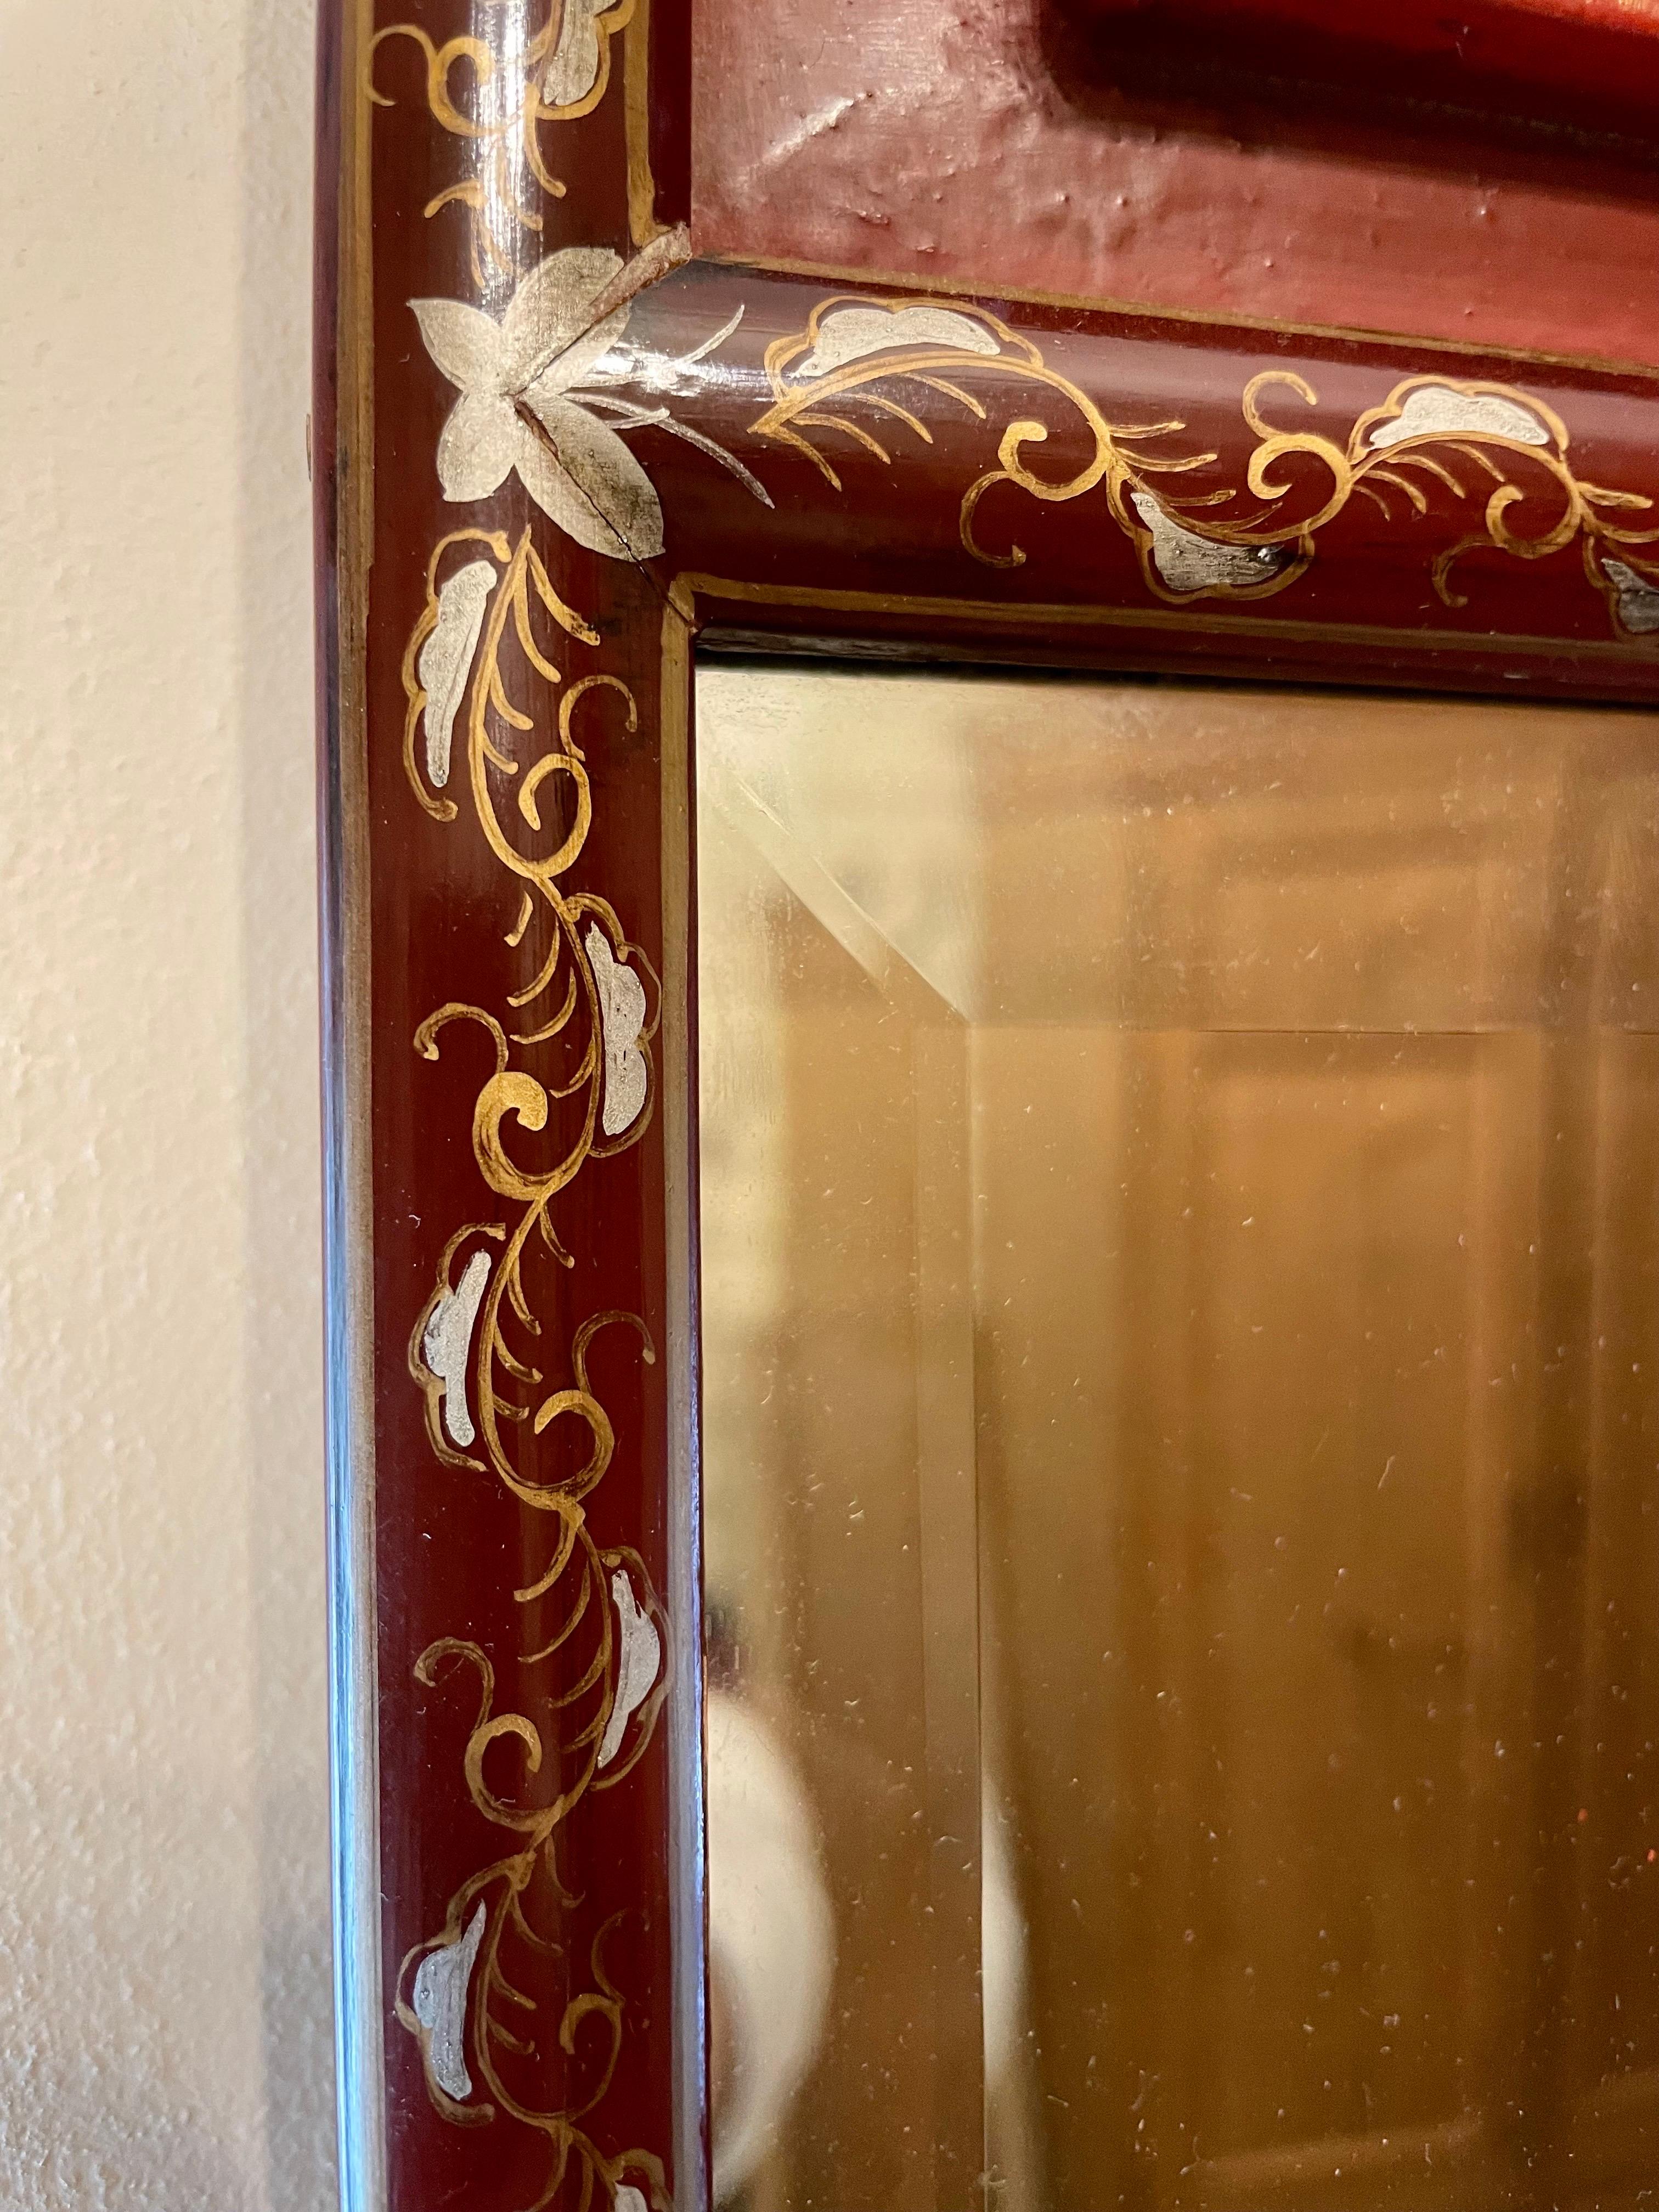 Doré sculpté chinois  Miroir biseauté avec détails peints autour d'un cadre en bois laqué couleur sang de boeuf. Le panneau sculpté en haut est doré à l'or fin. Détail en laiton sur le dessus. Fil de fer au dos pour la suspension. Très beau miroir